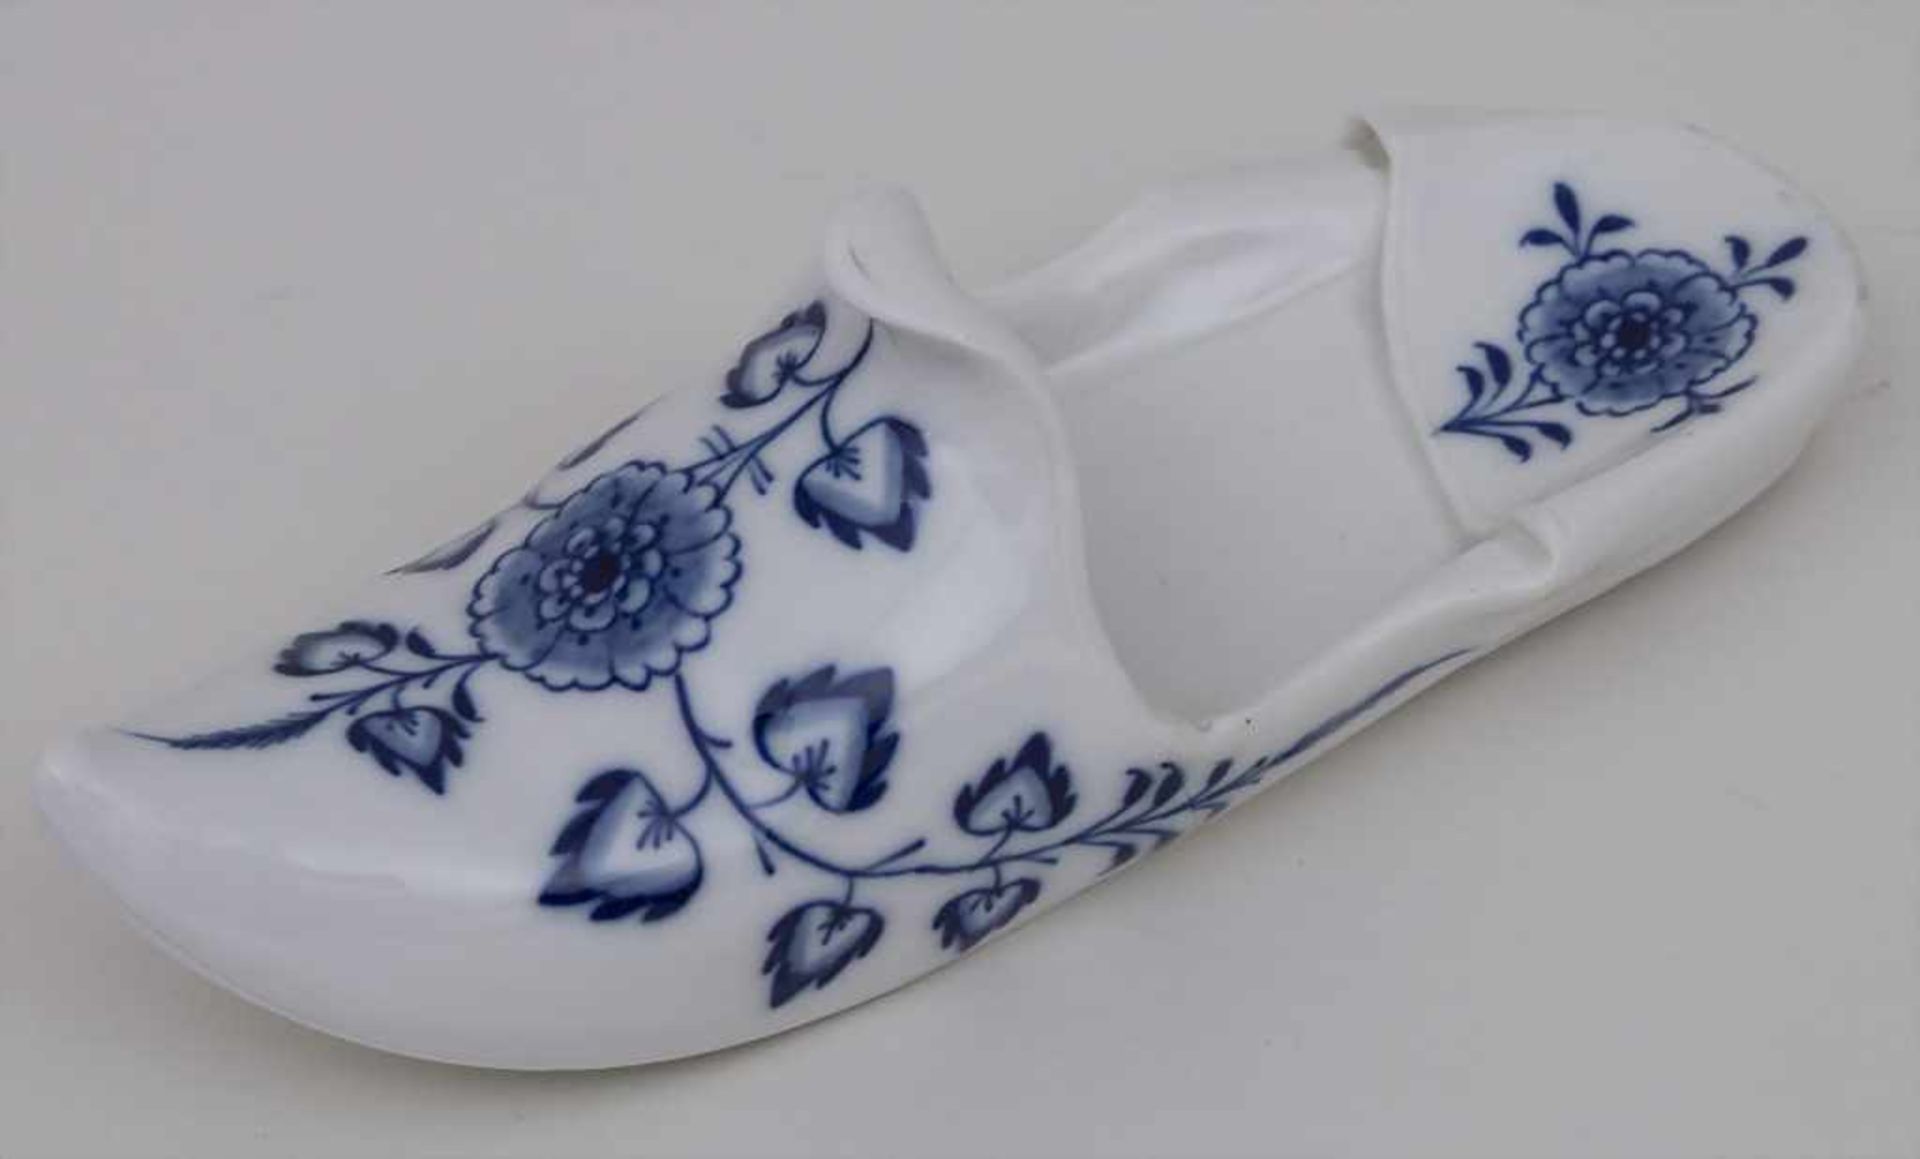 Großer Pantoffel / Schuh / A slipper, Meissen, um 1880 Material: Porzellan, unterglasurblau